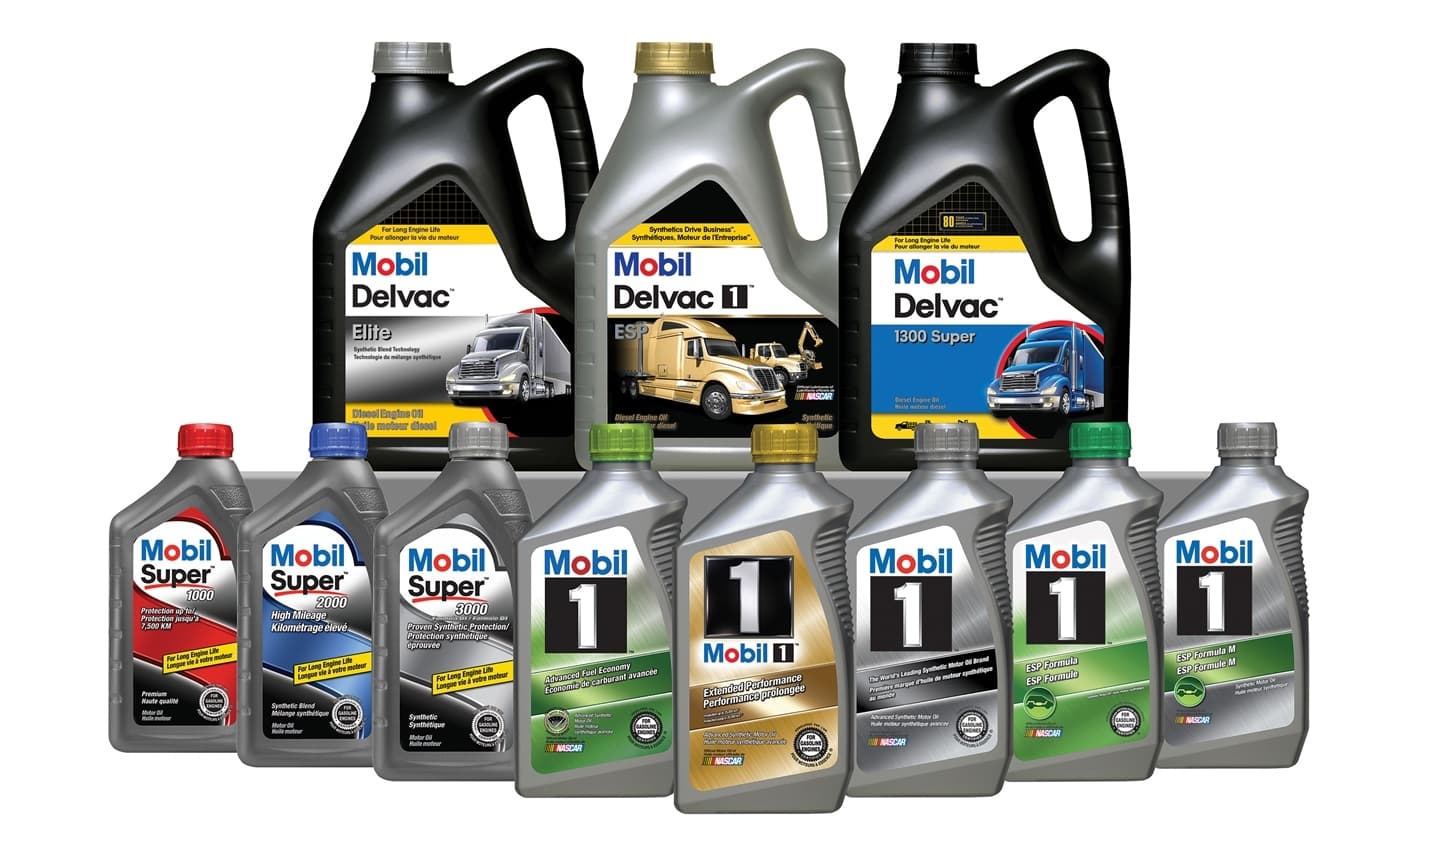 Aceite para el coche barato vs aceite caro